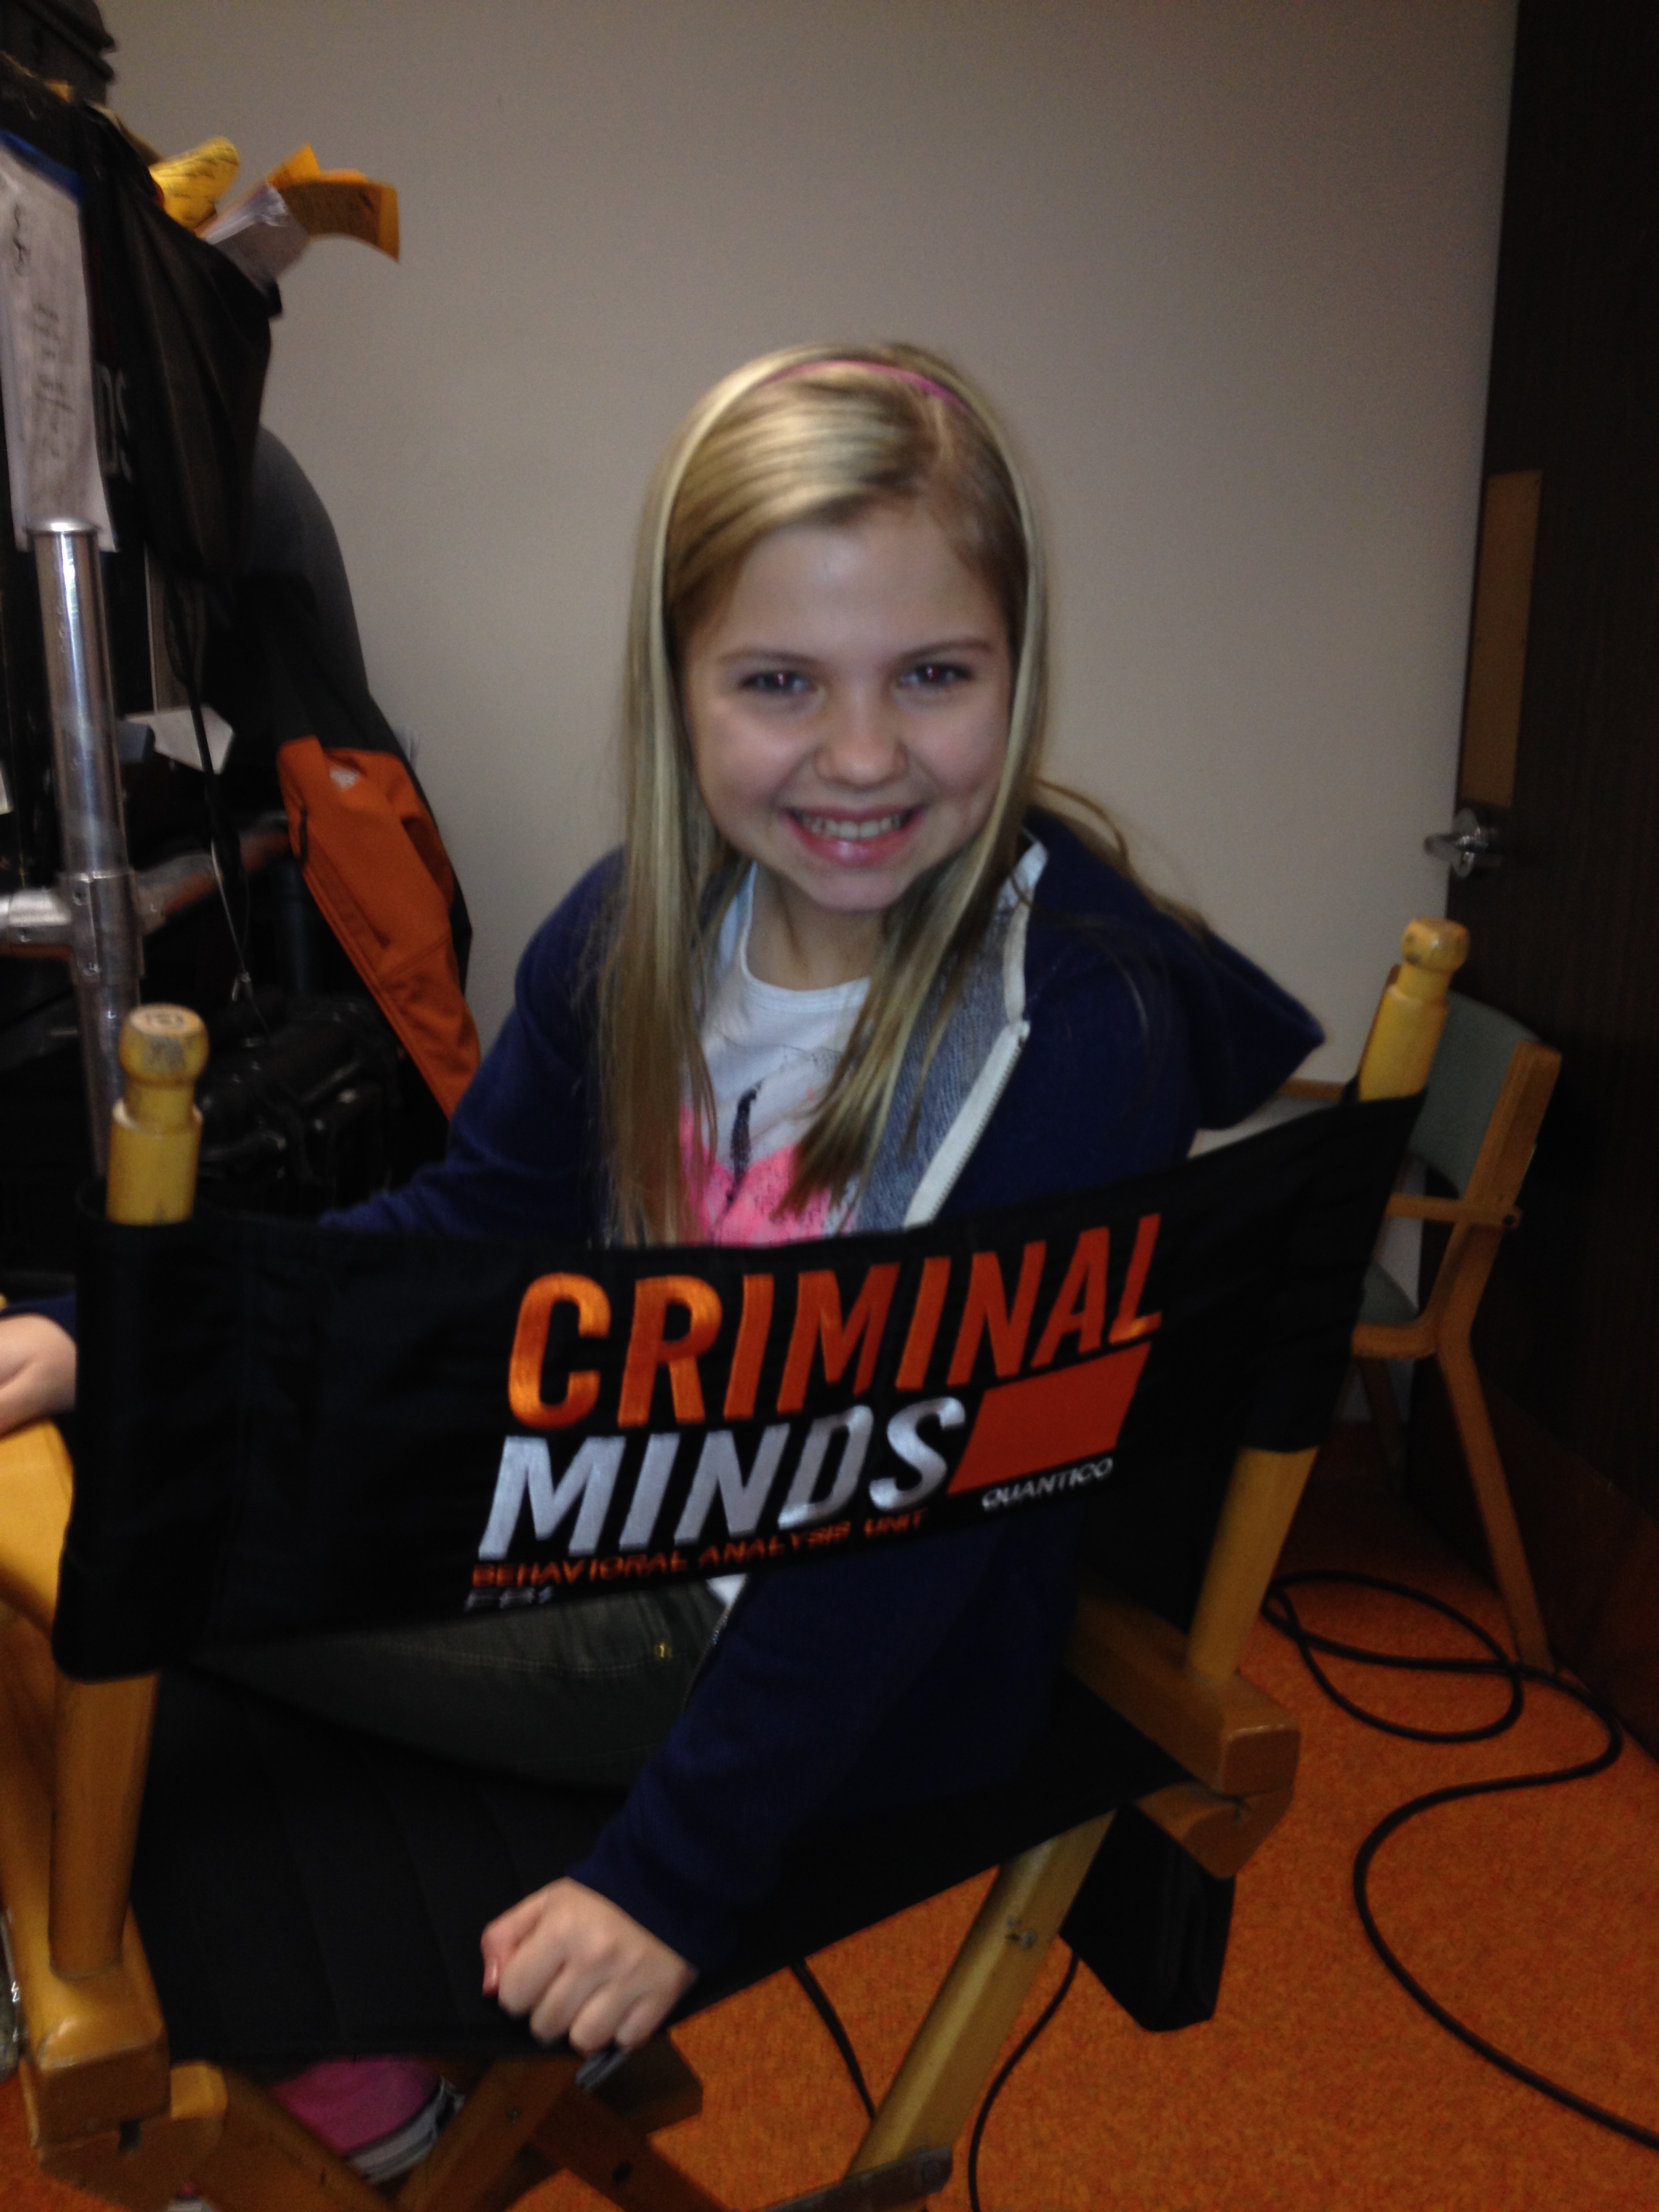 Criminal Minds episode 918!